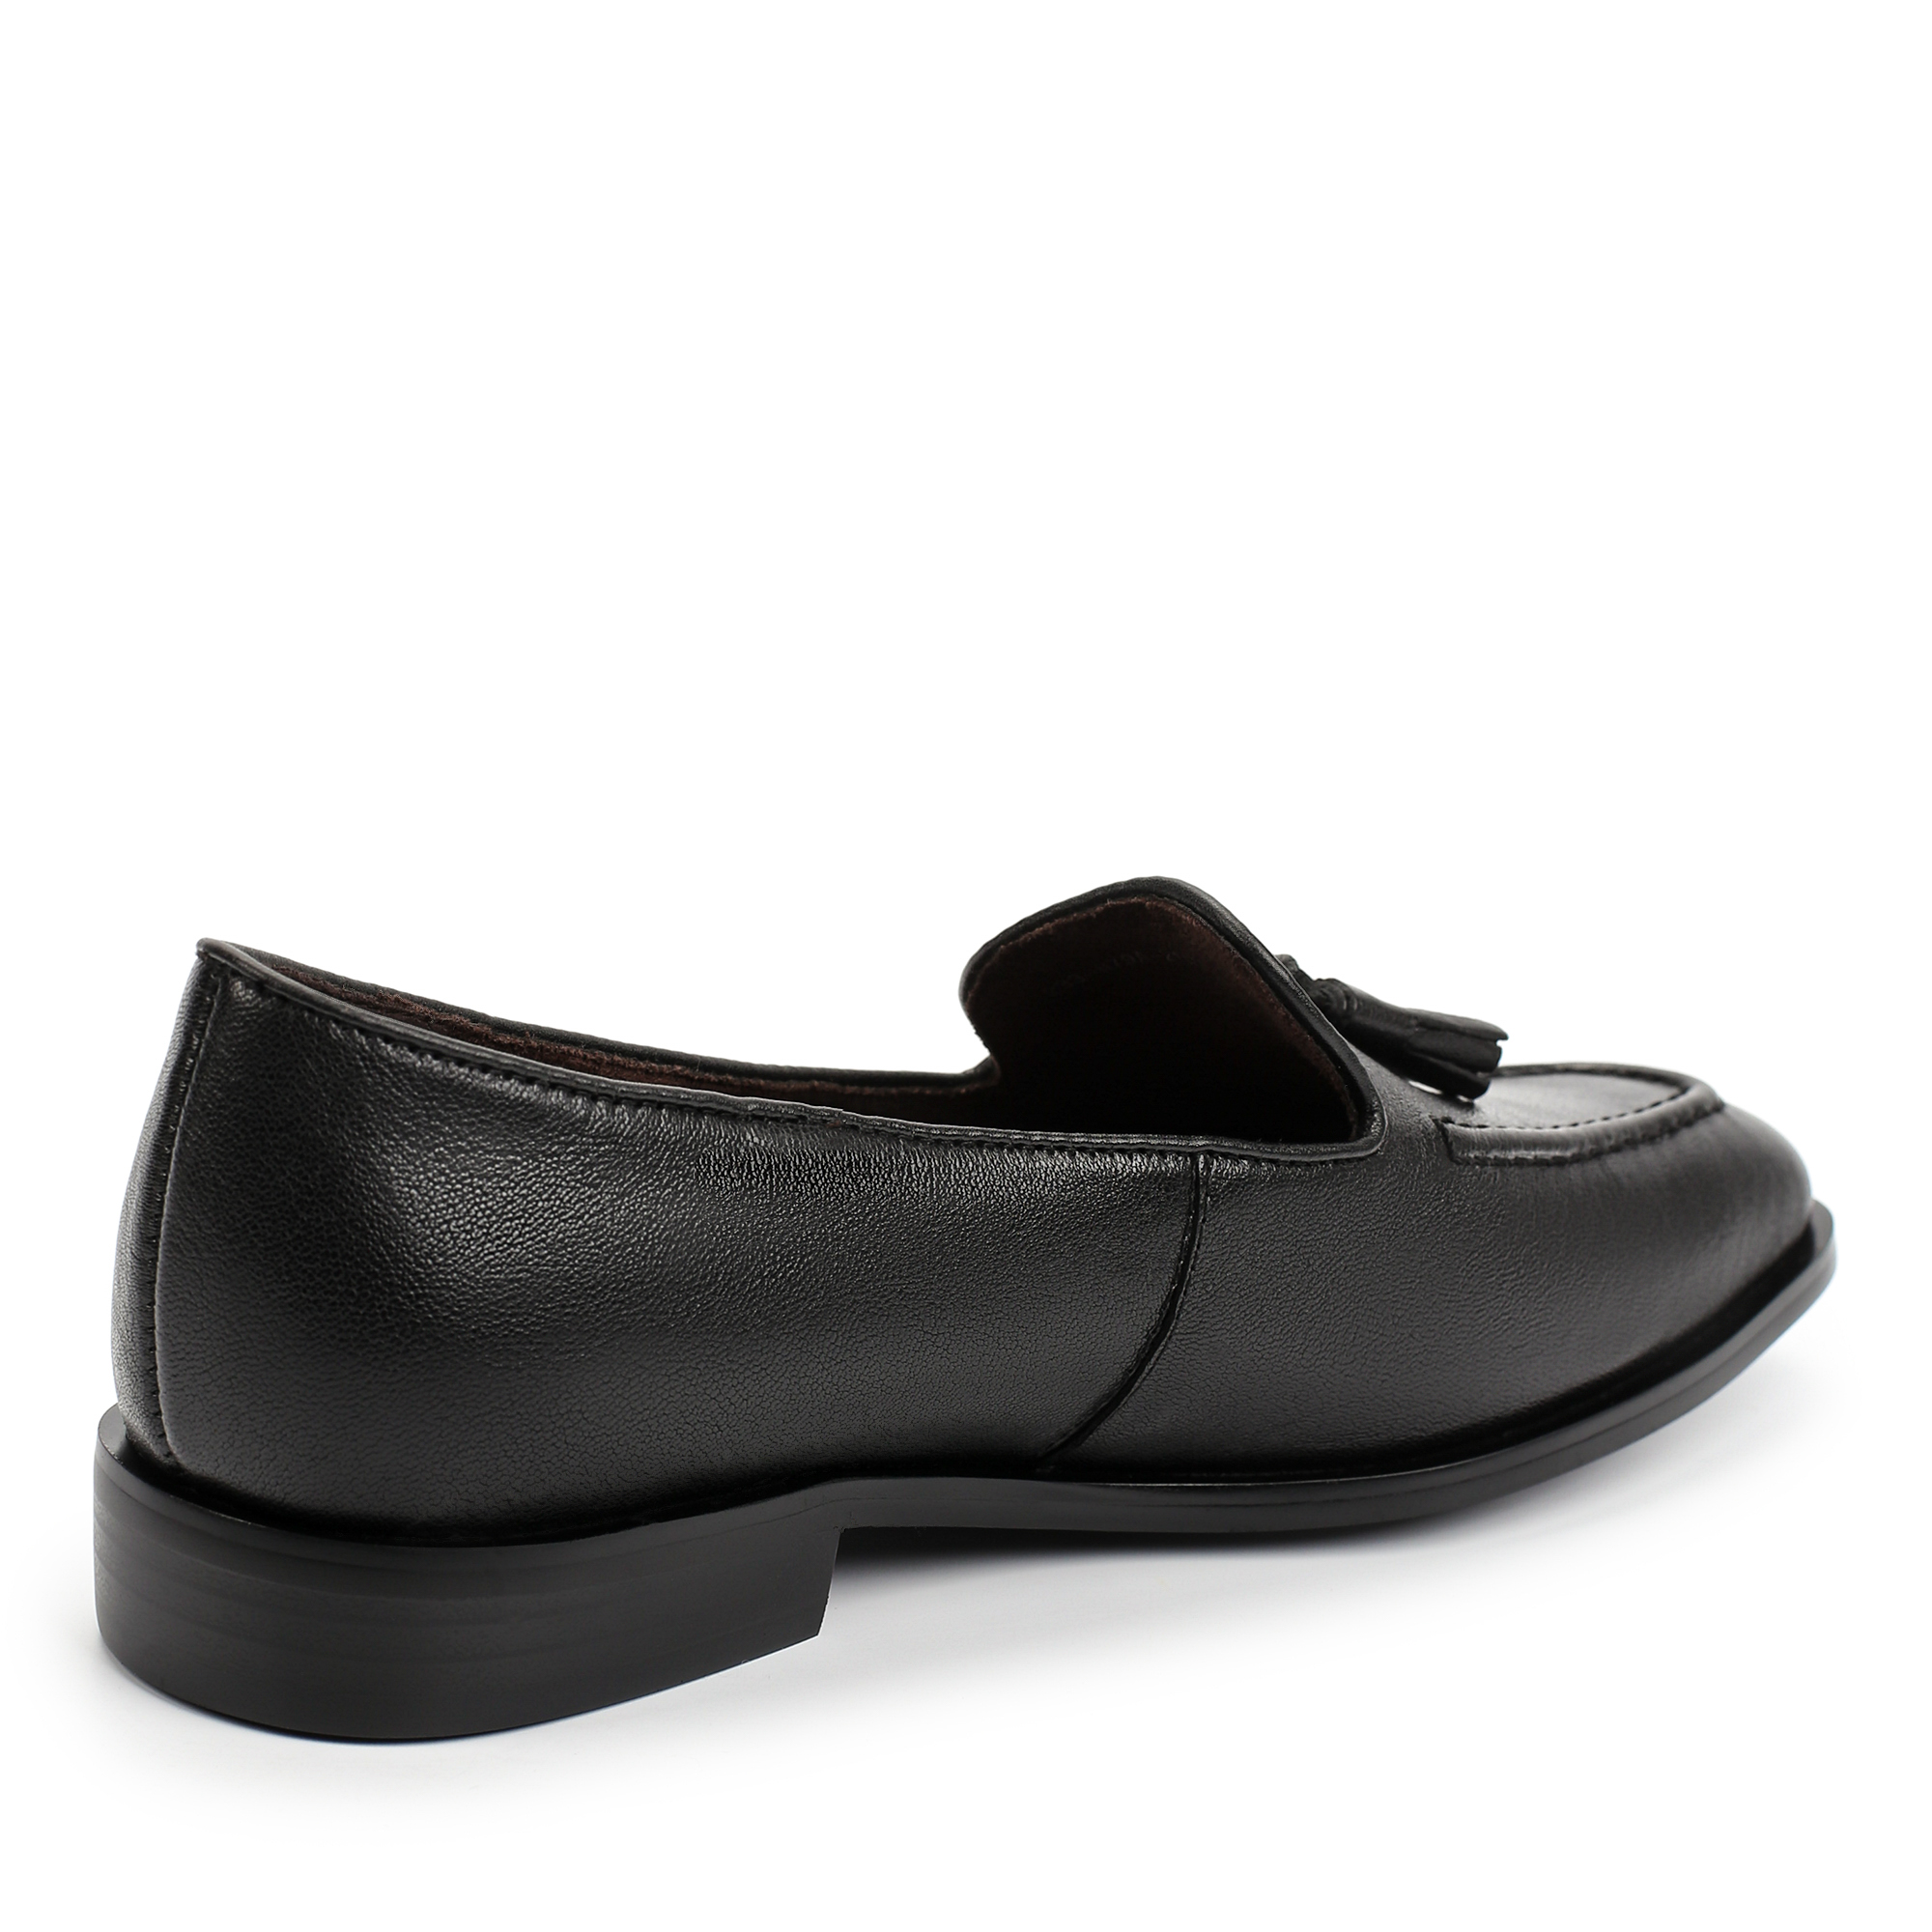 Туфли Thomas Munz 233-879A-2102, цвет черный, размер 37 - фото 3